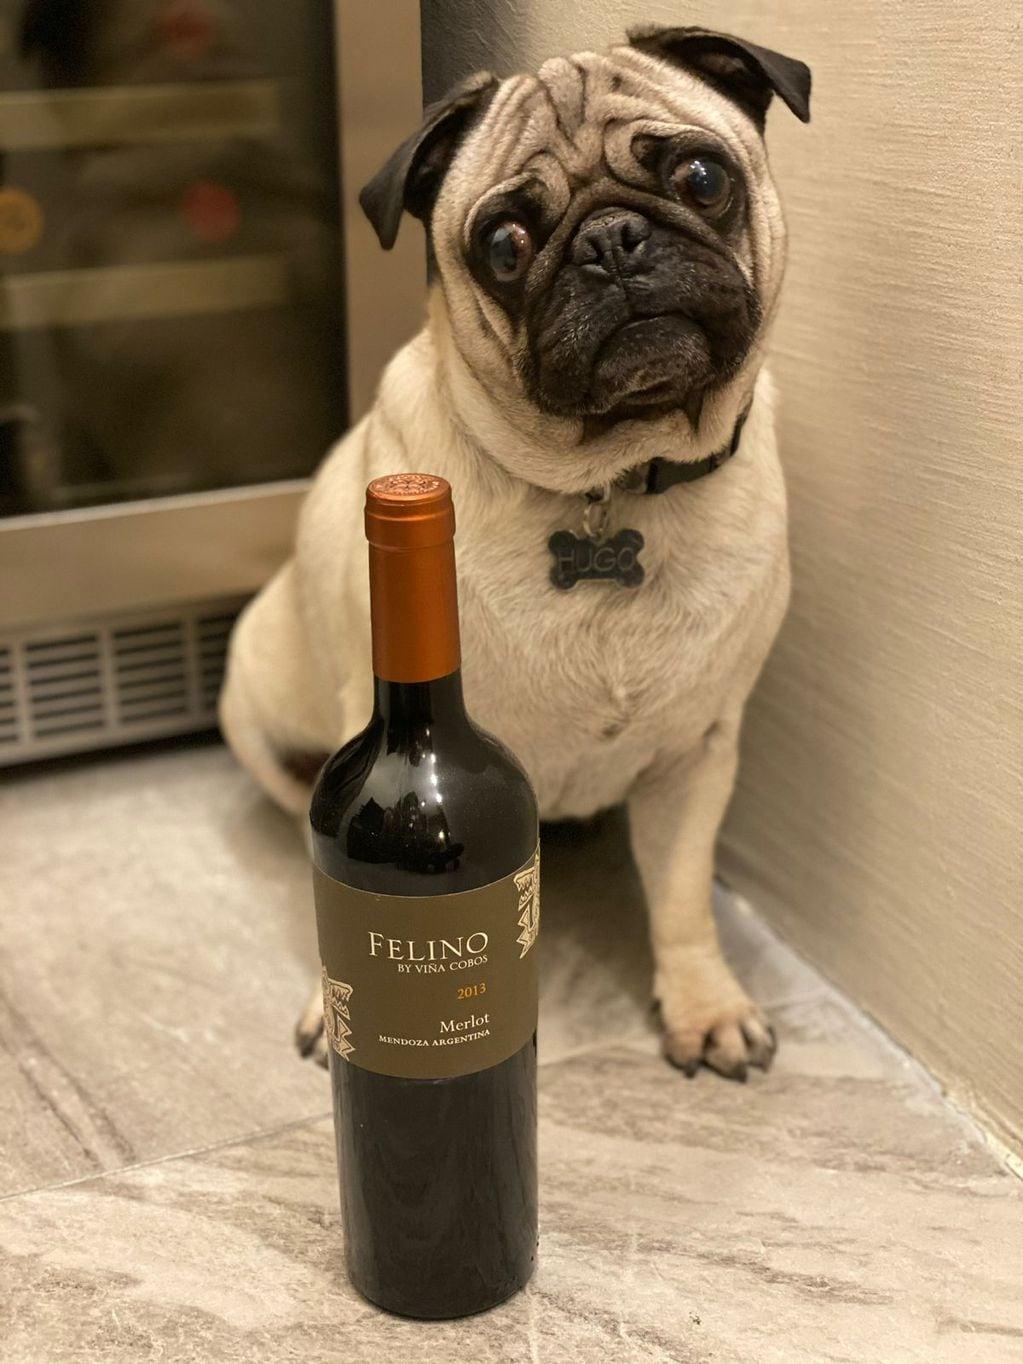 Hugo disfruta de posar junto a botellas de vino y a sus dueños disfrutan de tomarlos.